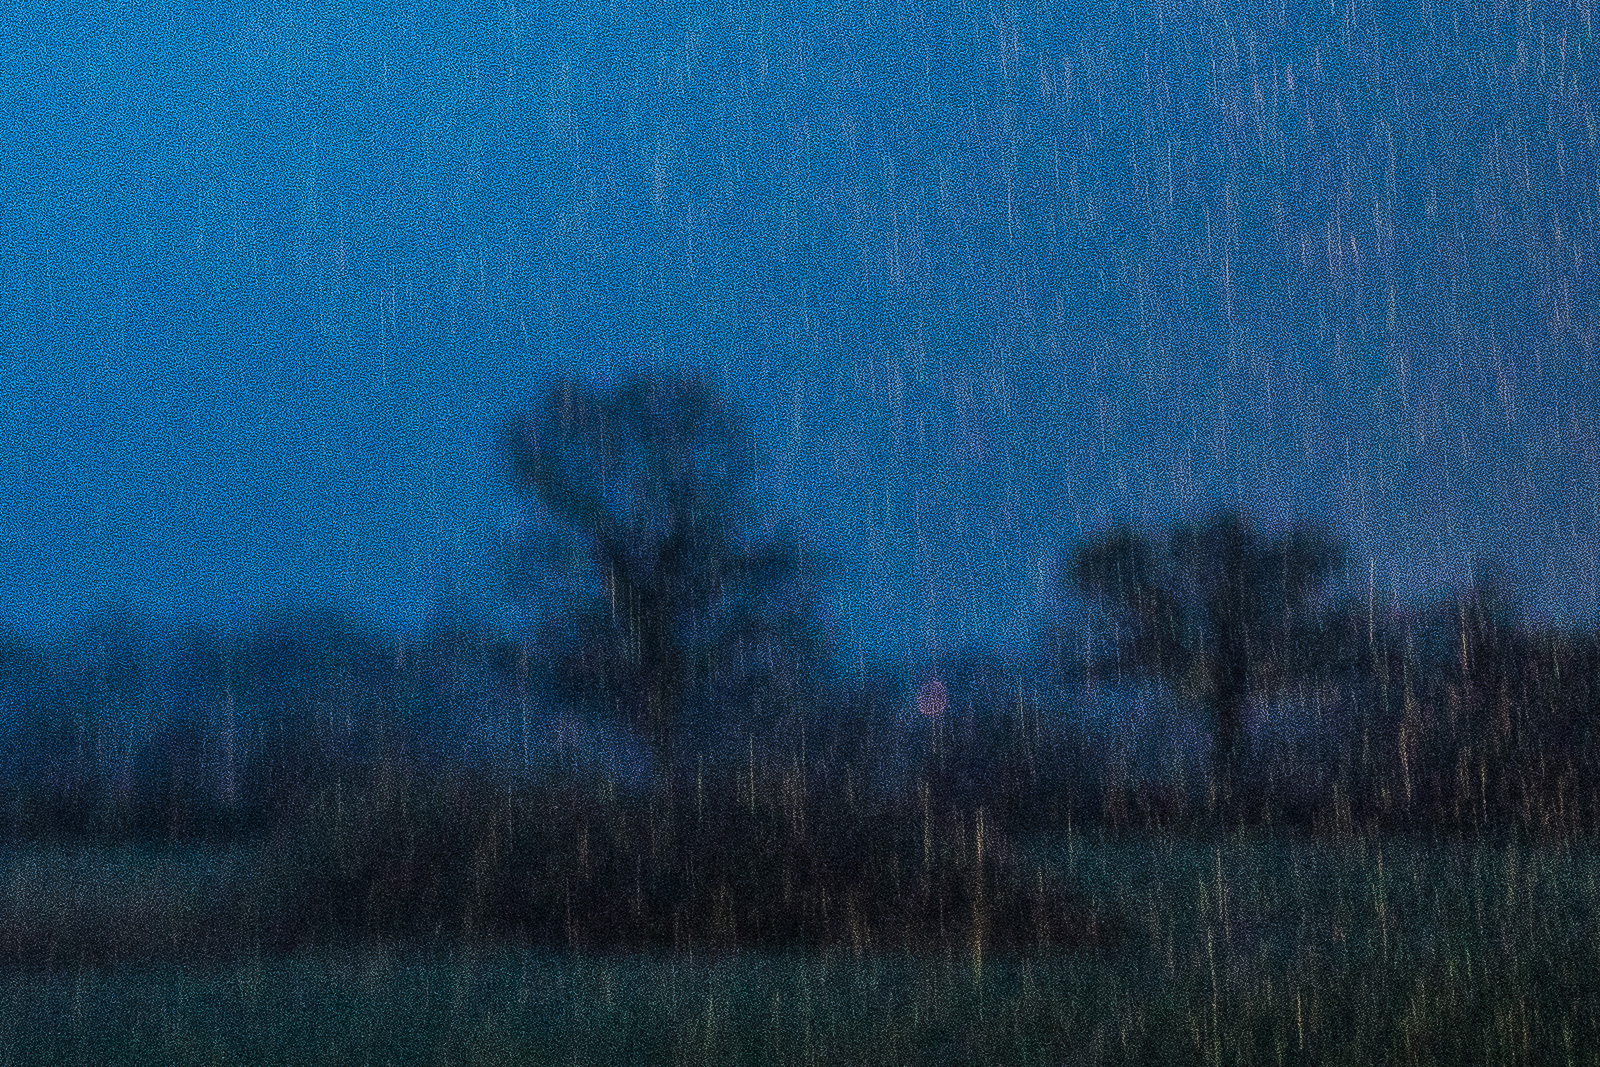 Vor dunkelblauem Abendhimmel als Hintergrund sind als feines helles Streifenmuster zahlreiche fallende Regentropfen zu sehen. Sie werden offensichtlich von einer Lichtquelle angestrahlt, die im Bild aber selbst nicht sichtbar wird. In der unteren Bildhälfte erkennt man unscharf eine Baumreihe auf einer Wiese als dunkle Silhouetten.